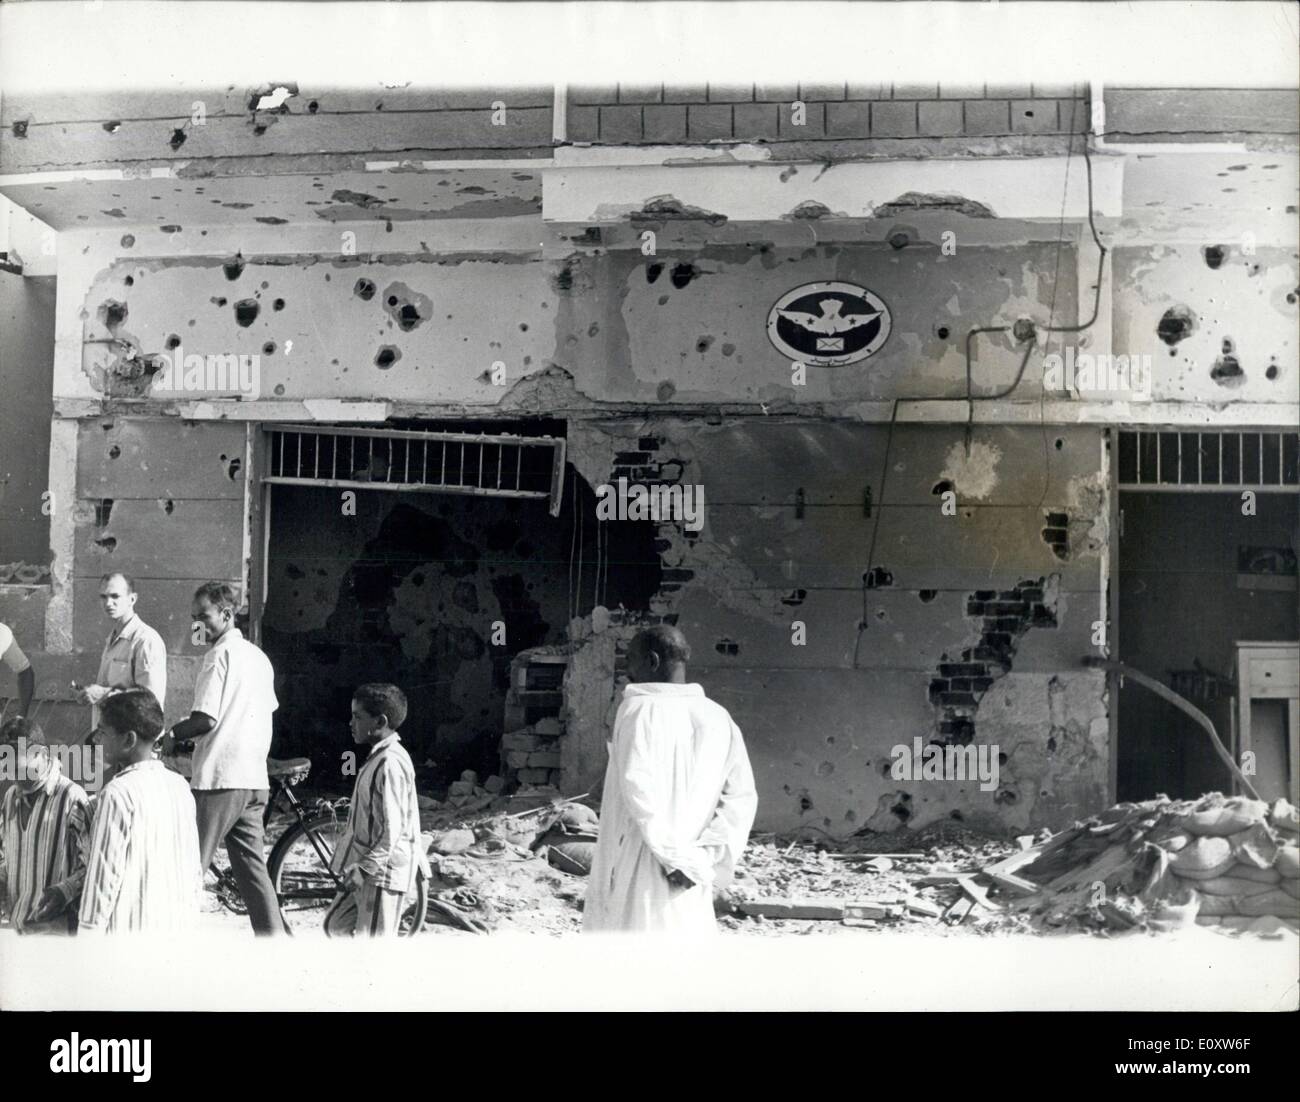 Sept. 23, 1967 - ägyptischen Postamt durch israelische SHELL-Feuer beschädigt. Foto zeigt: Die Post auf Quantara am Suezkanal, durch israelische Schale-Feuer beschädigt. Ägypten behauptete, mit einen Artillerieschwall auf einen weiteren Angriff geantwortet haben, zerstören könnte, israelische Panzer und zwei gepanzerte Fahrzeuge, und ich viele Soldaten zu töten. Stockfoto